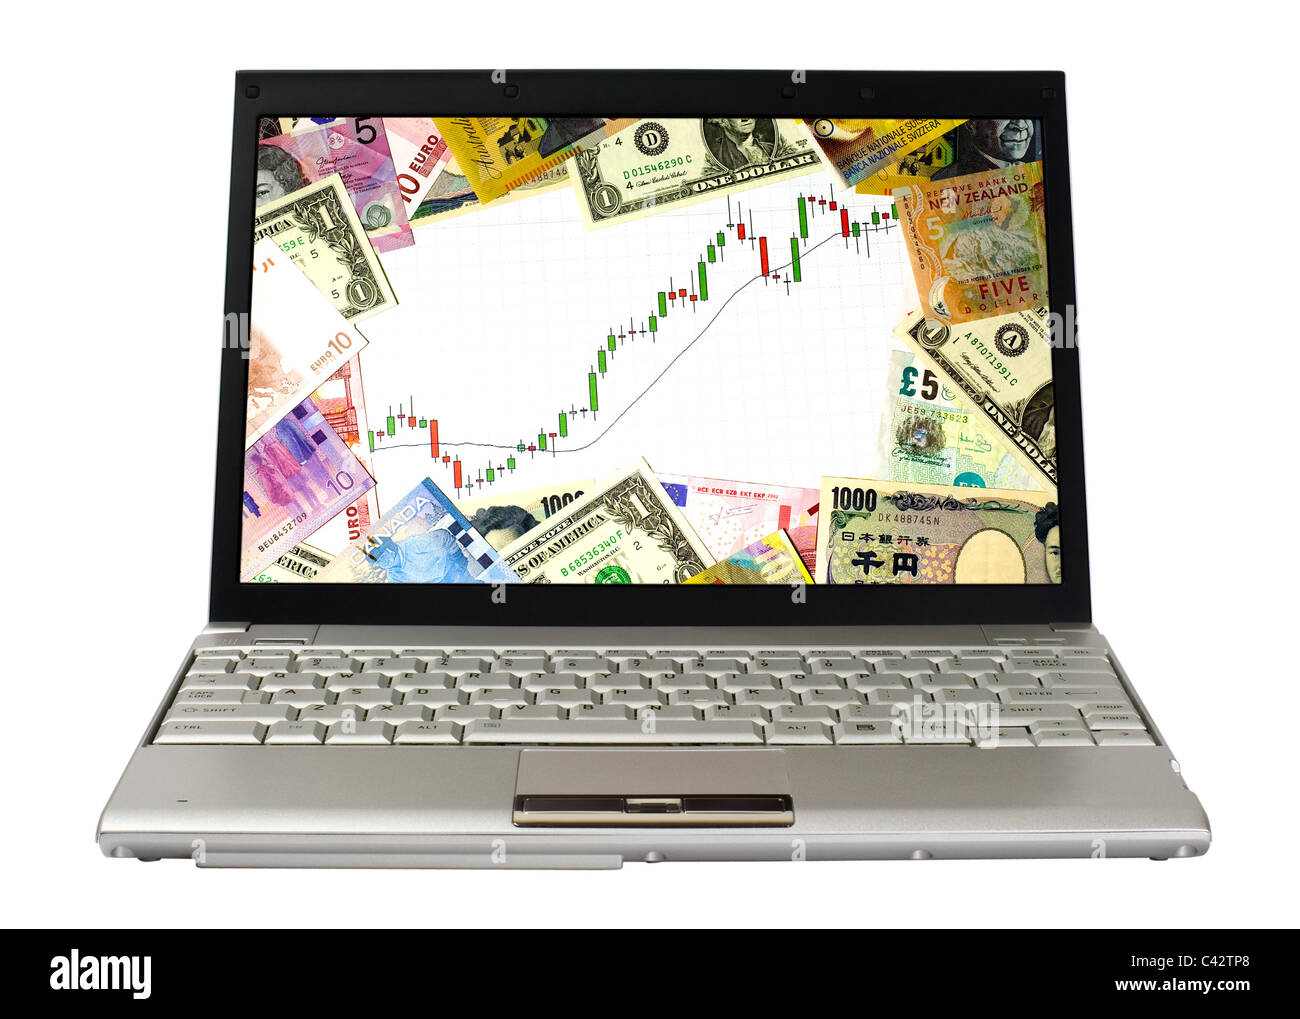 Laptop zeigt Candlestick-Chart einer Hausse, umgeben von Währungen verschiedener Länder Stockfoto